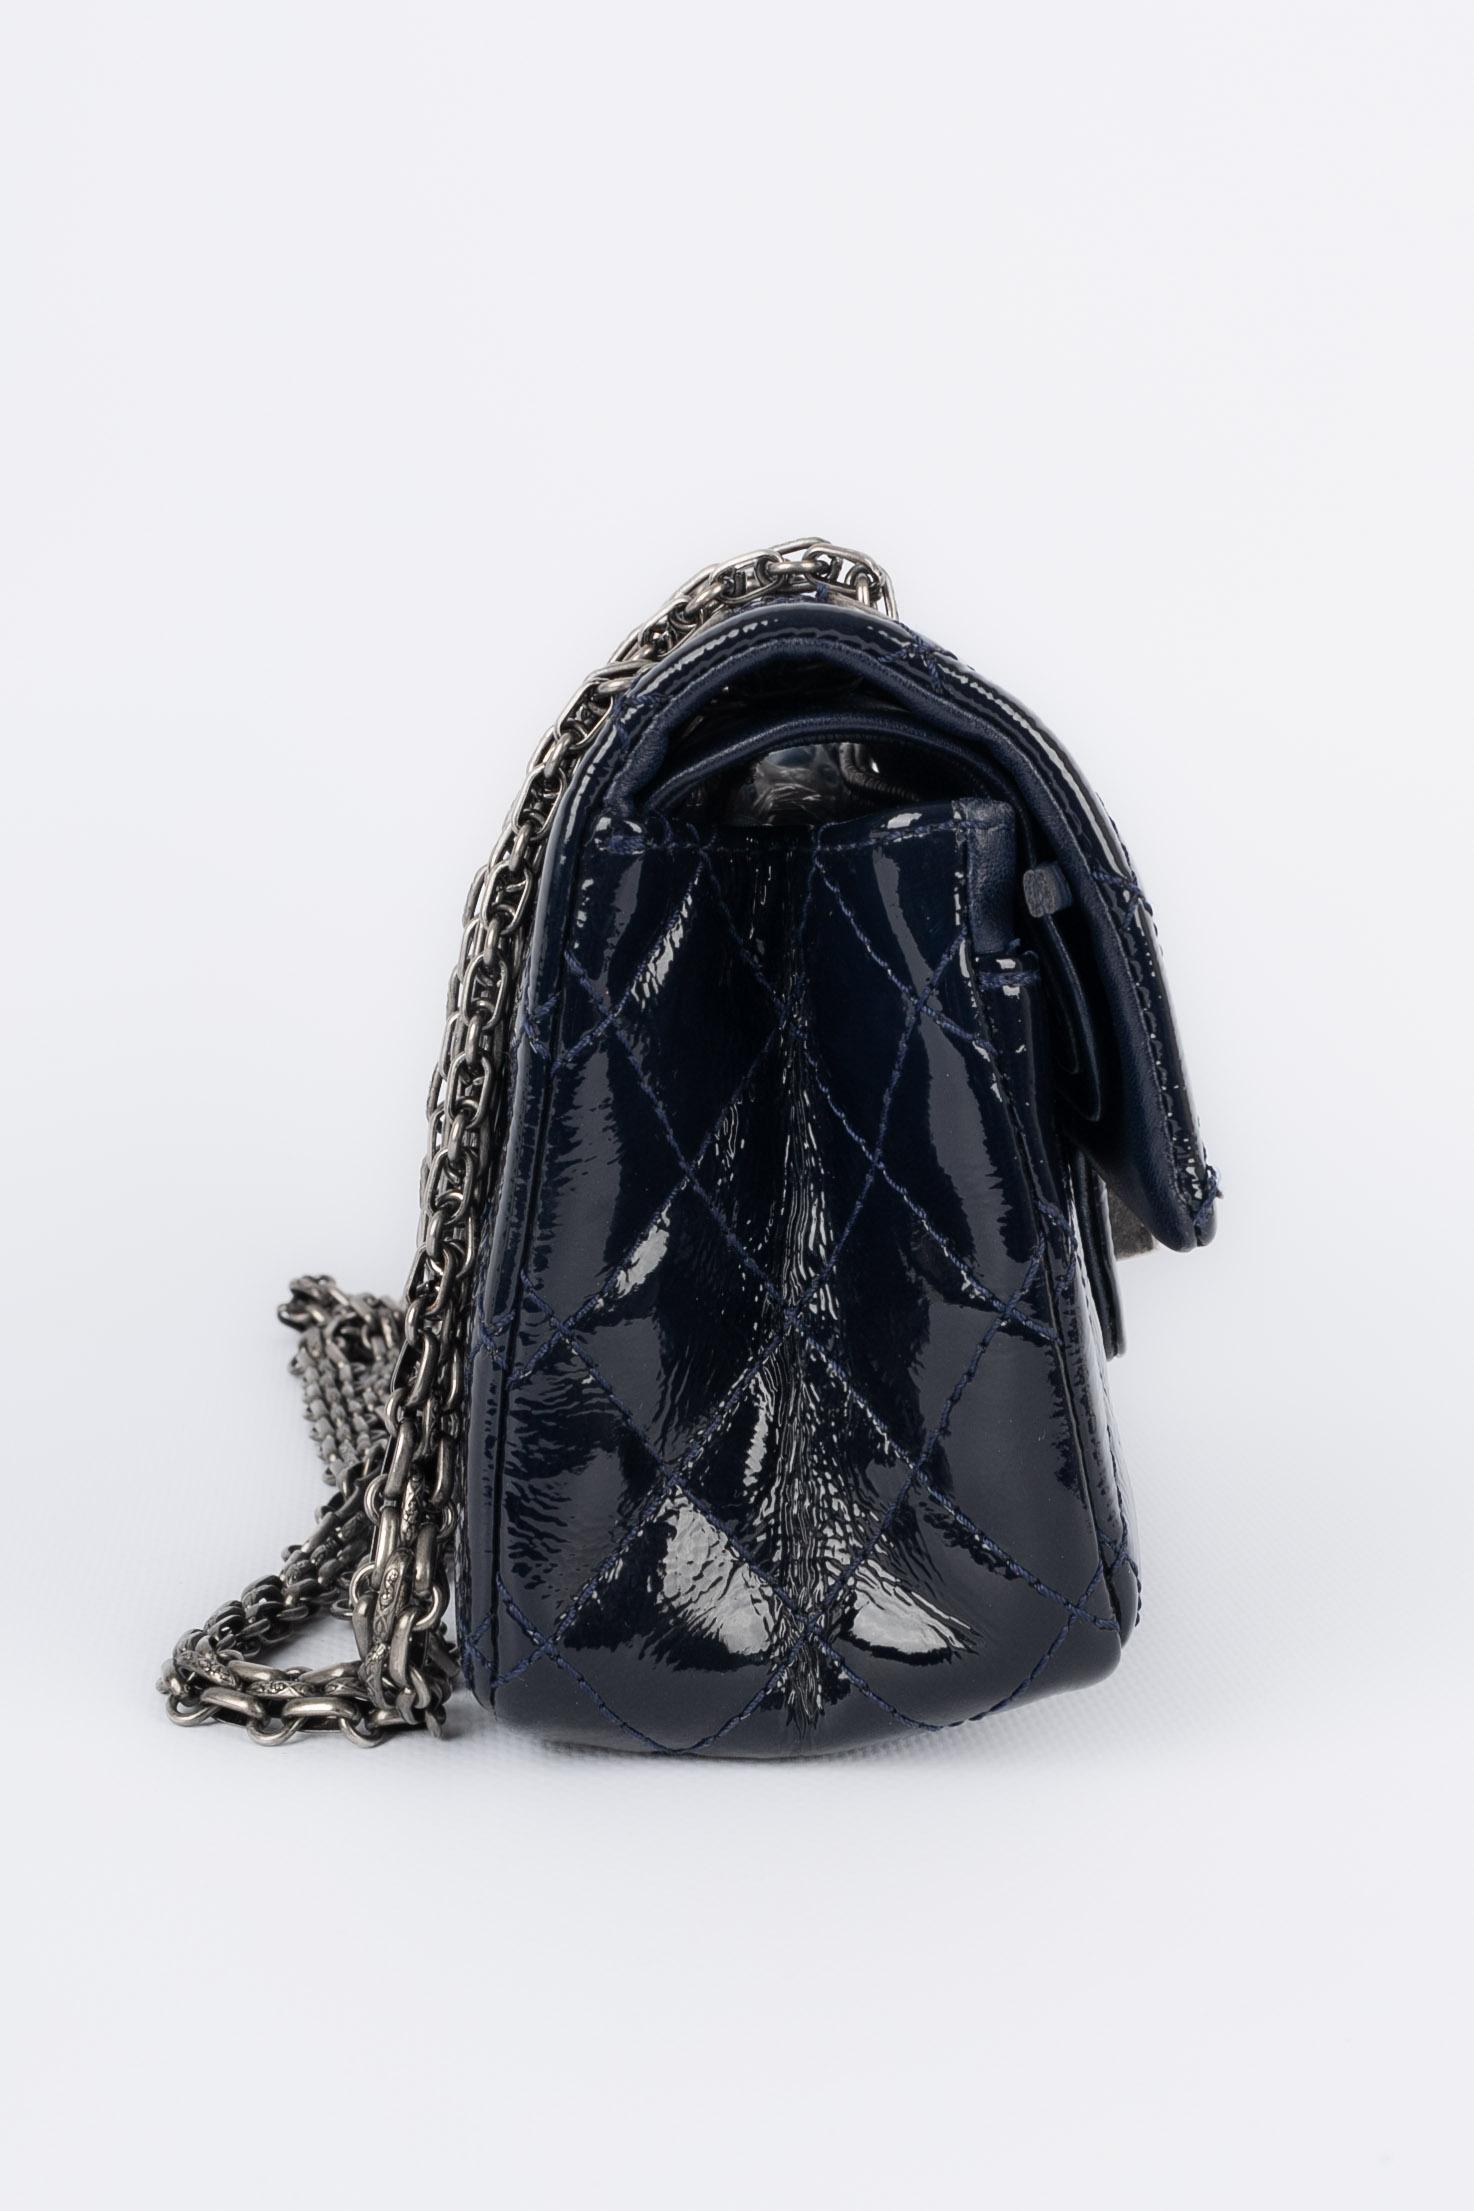 Chanel 2.55 bag 2010/2011 In Excellent Condition For Sale In SAINT-OUEN-SUR-SEINE, FR